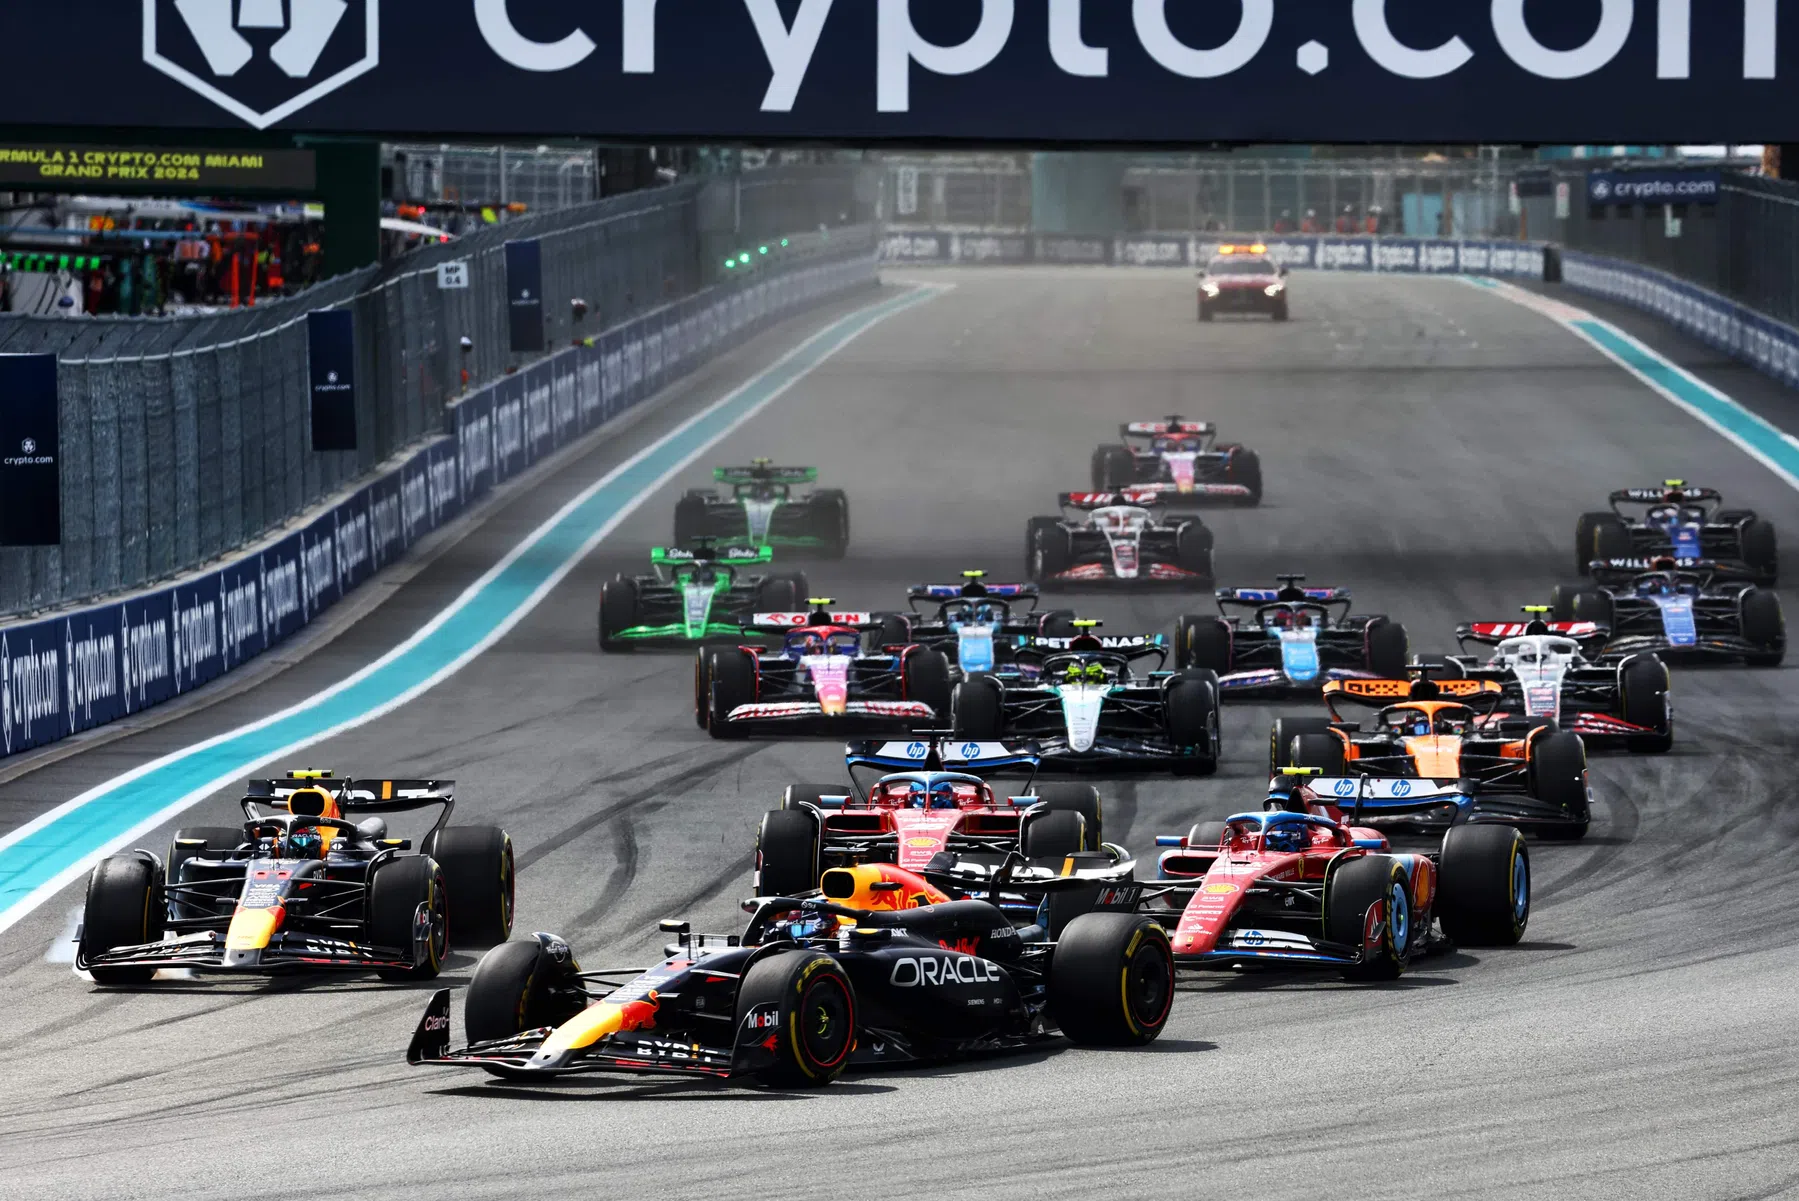 WK-stand F1 bij constructeurs, Red Bull scoort meeste punten in Miami